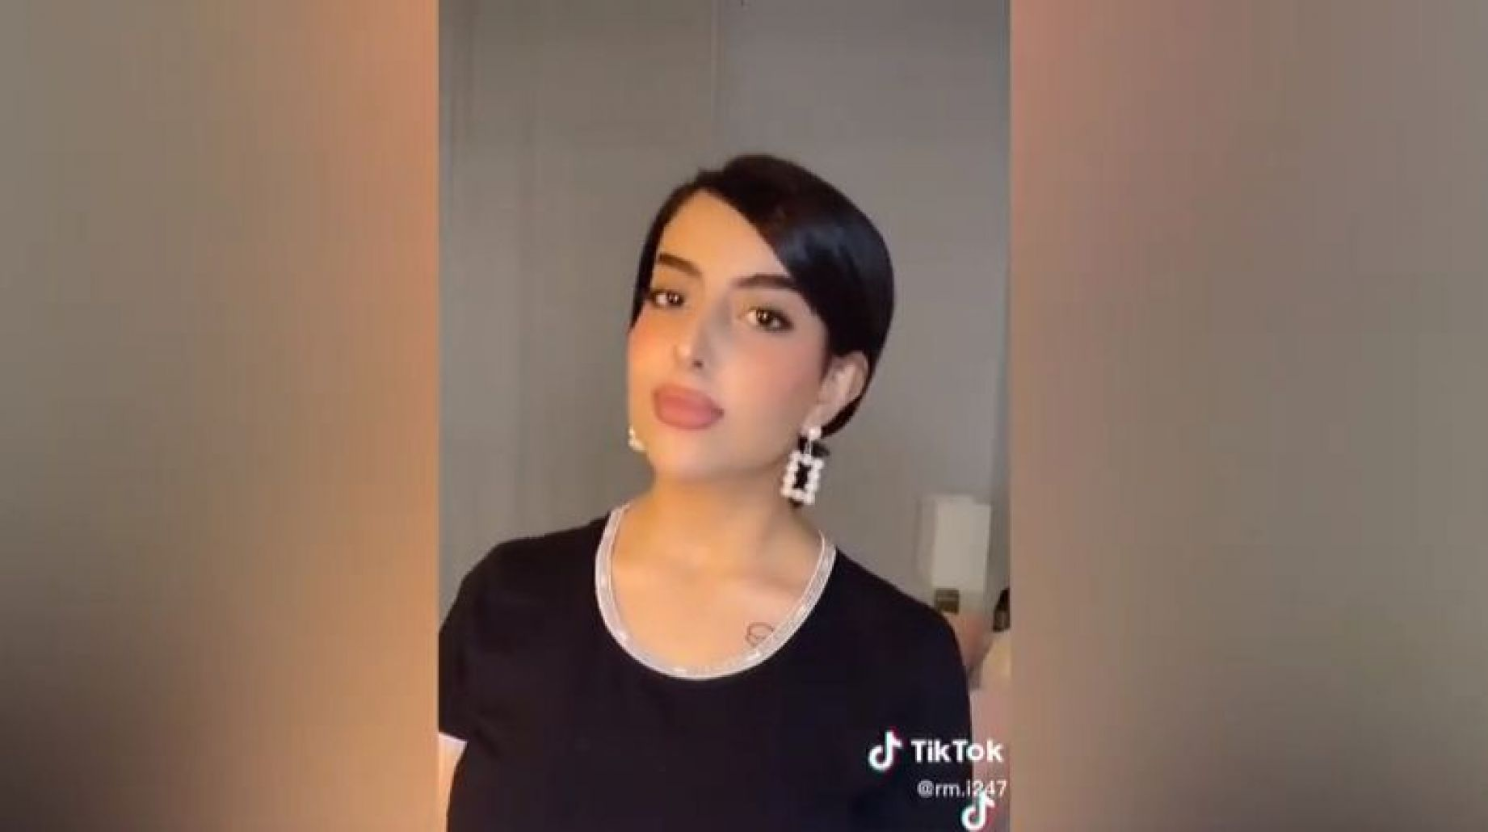 شبيهة “جورجينا” السعودية ريما العنزي ترقص لأنها “وجه الخير” على “رونالدو”! (فيديو)